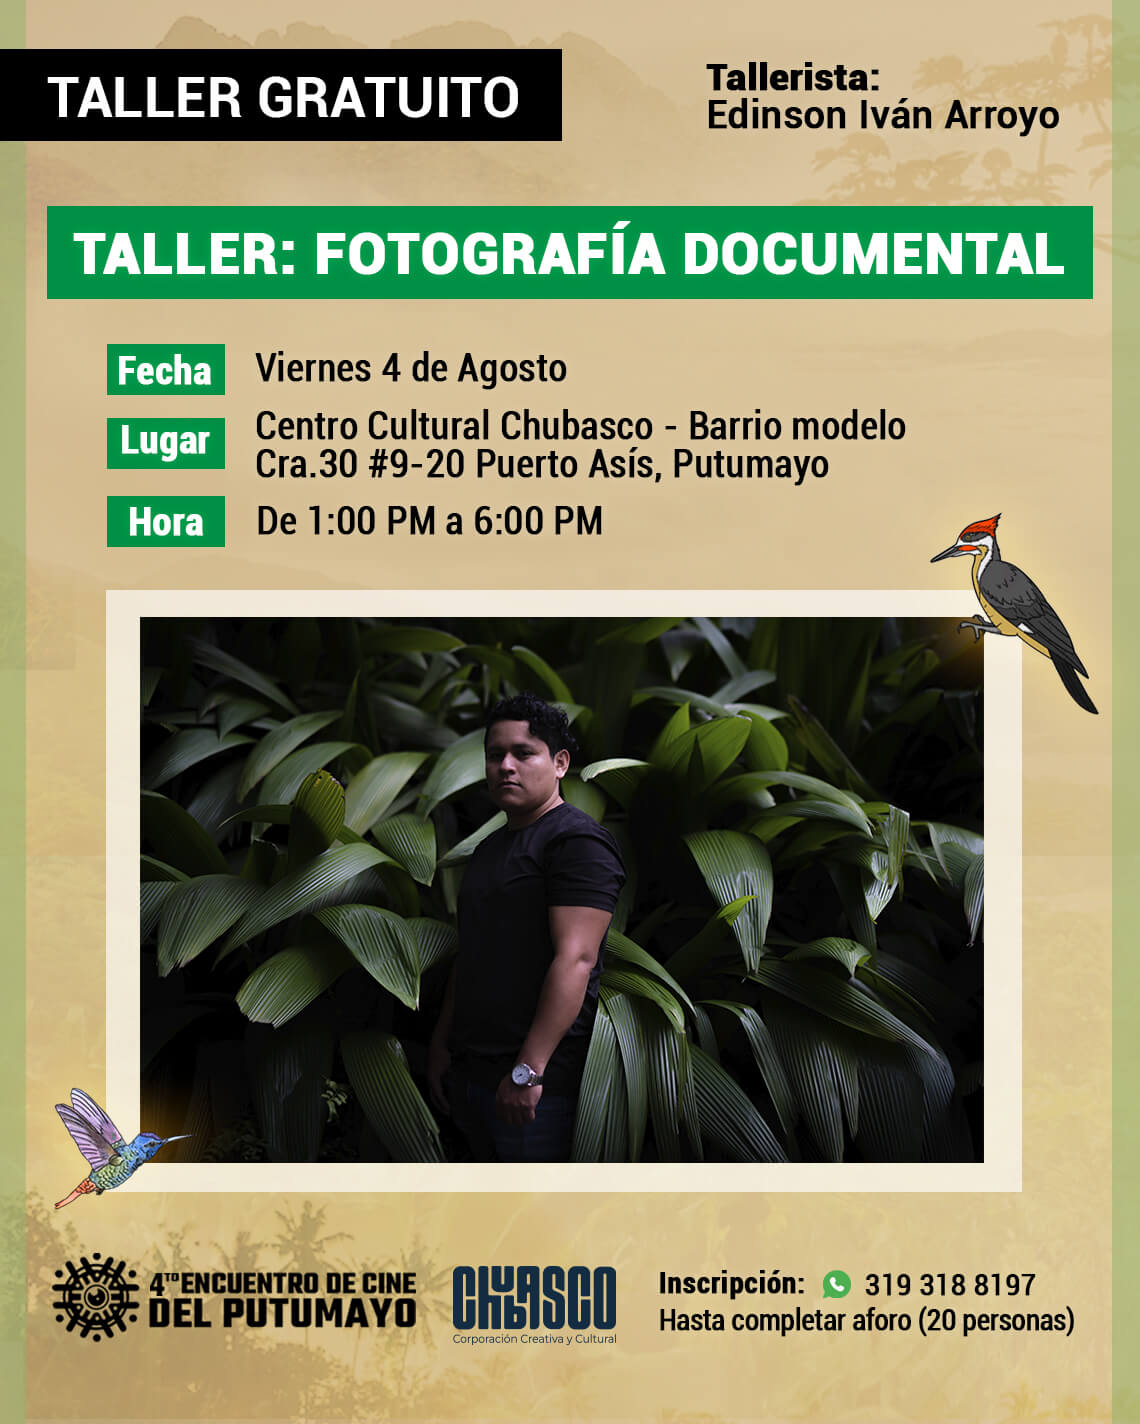 Taller Fotografía Documental Edinson Iván Arroyo